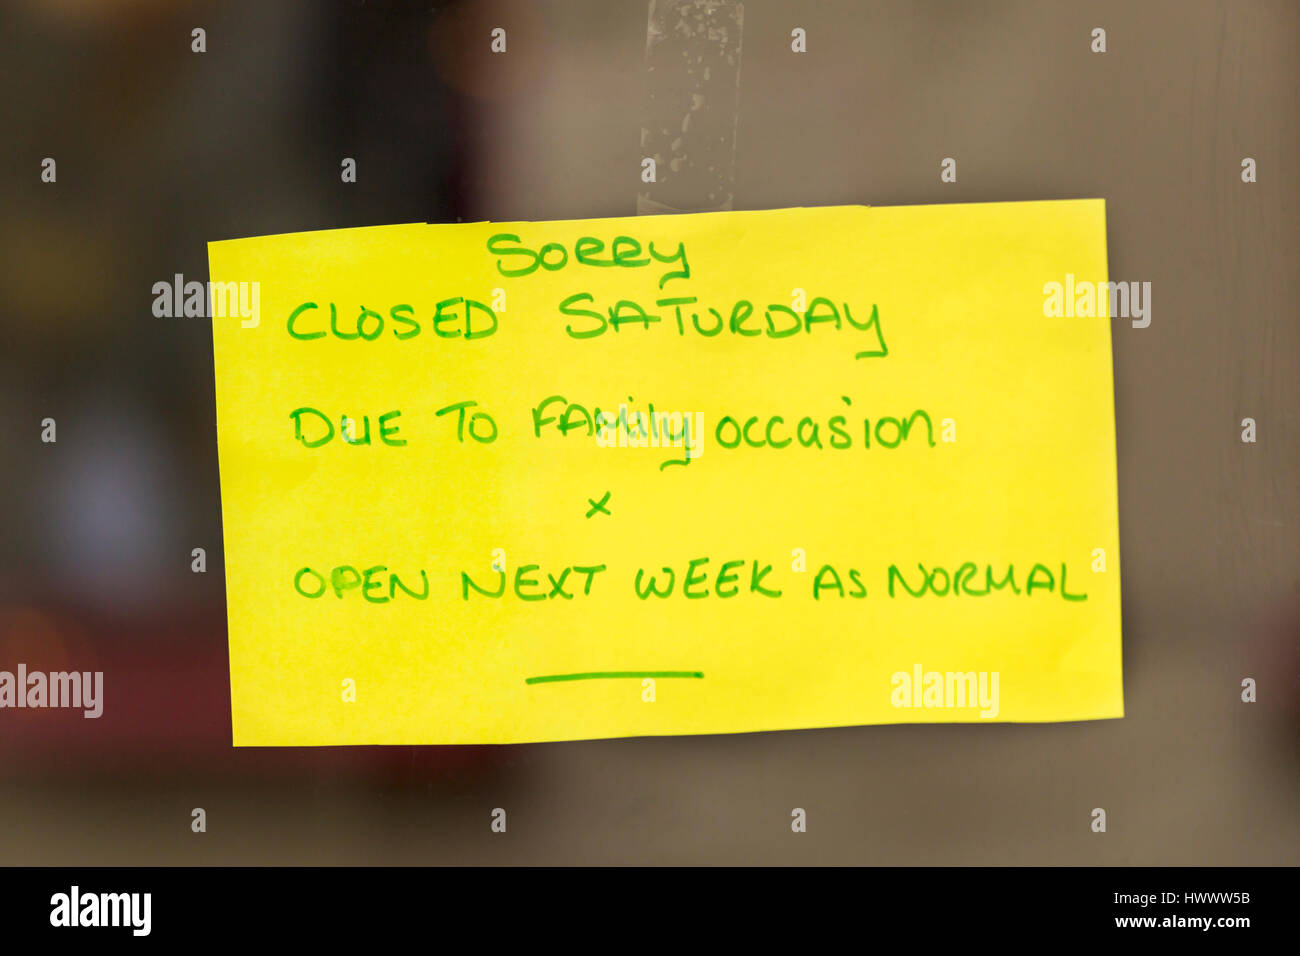 Désolés fermé le samedi en raison de l'occasion de la famille x open la semaine prochaine comme main normale note écrite sur du papier jaune coincé dans la porte de la boutique Banque D'Images